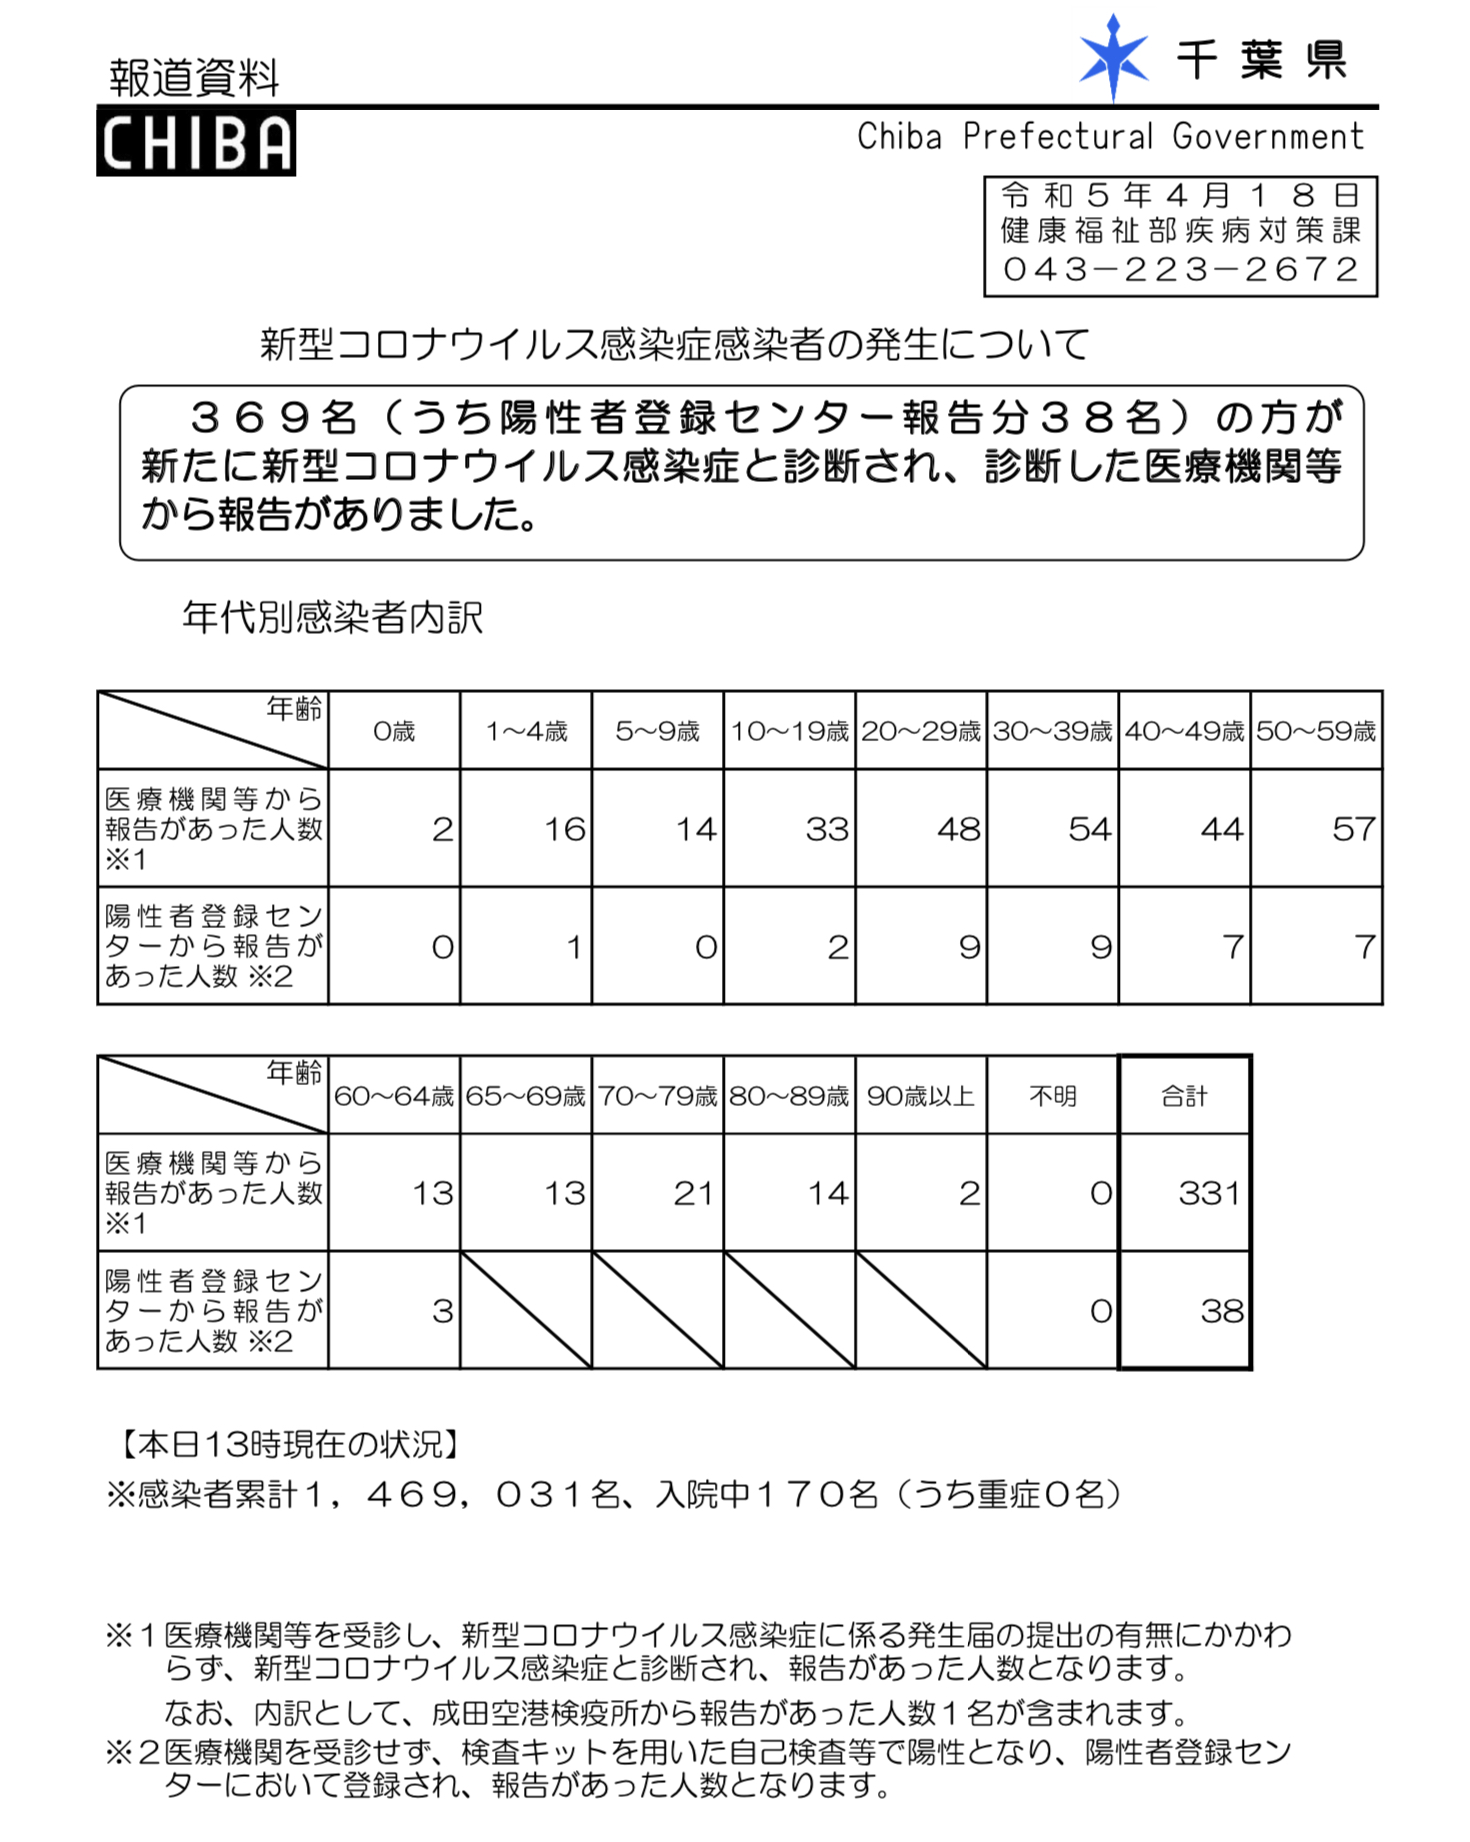 2023年4月18日千葉県新型コロナウイルス感染症情報